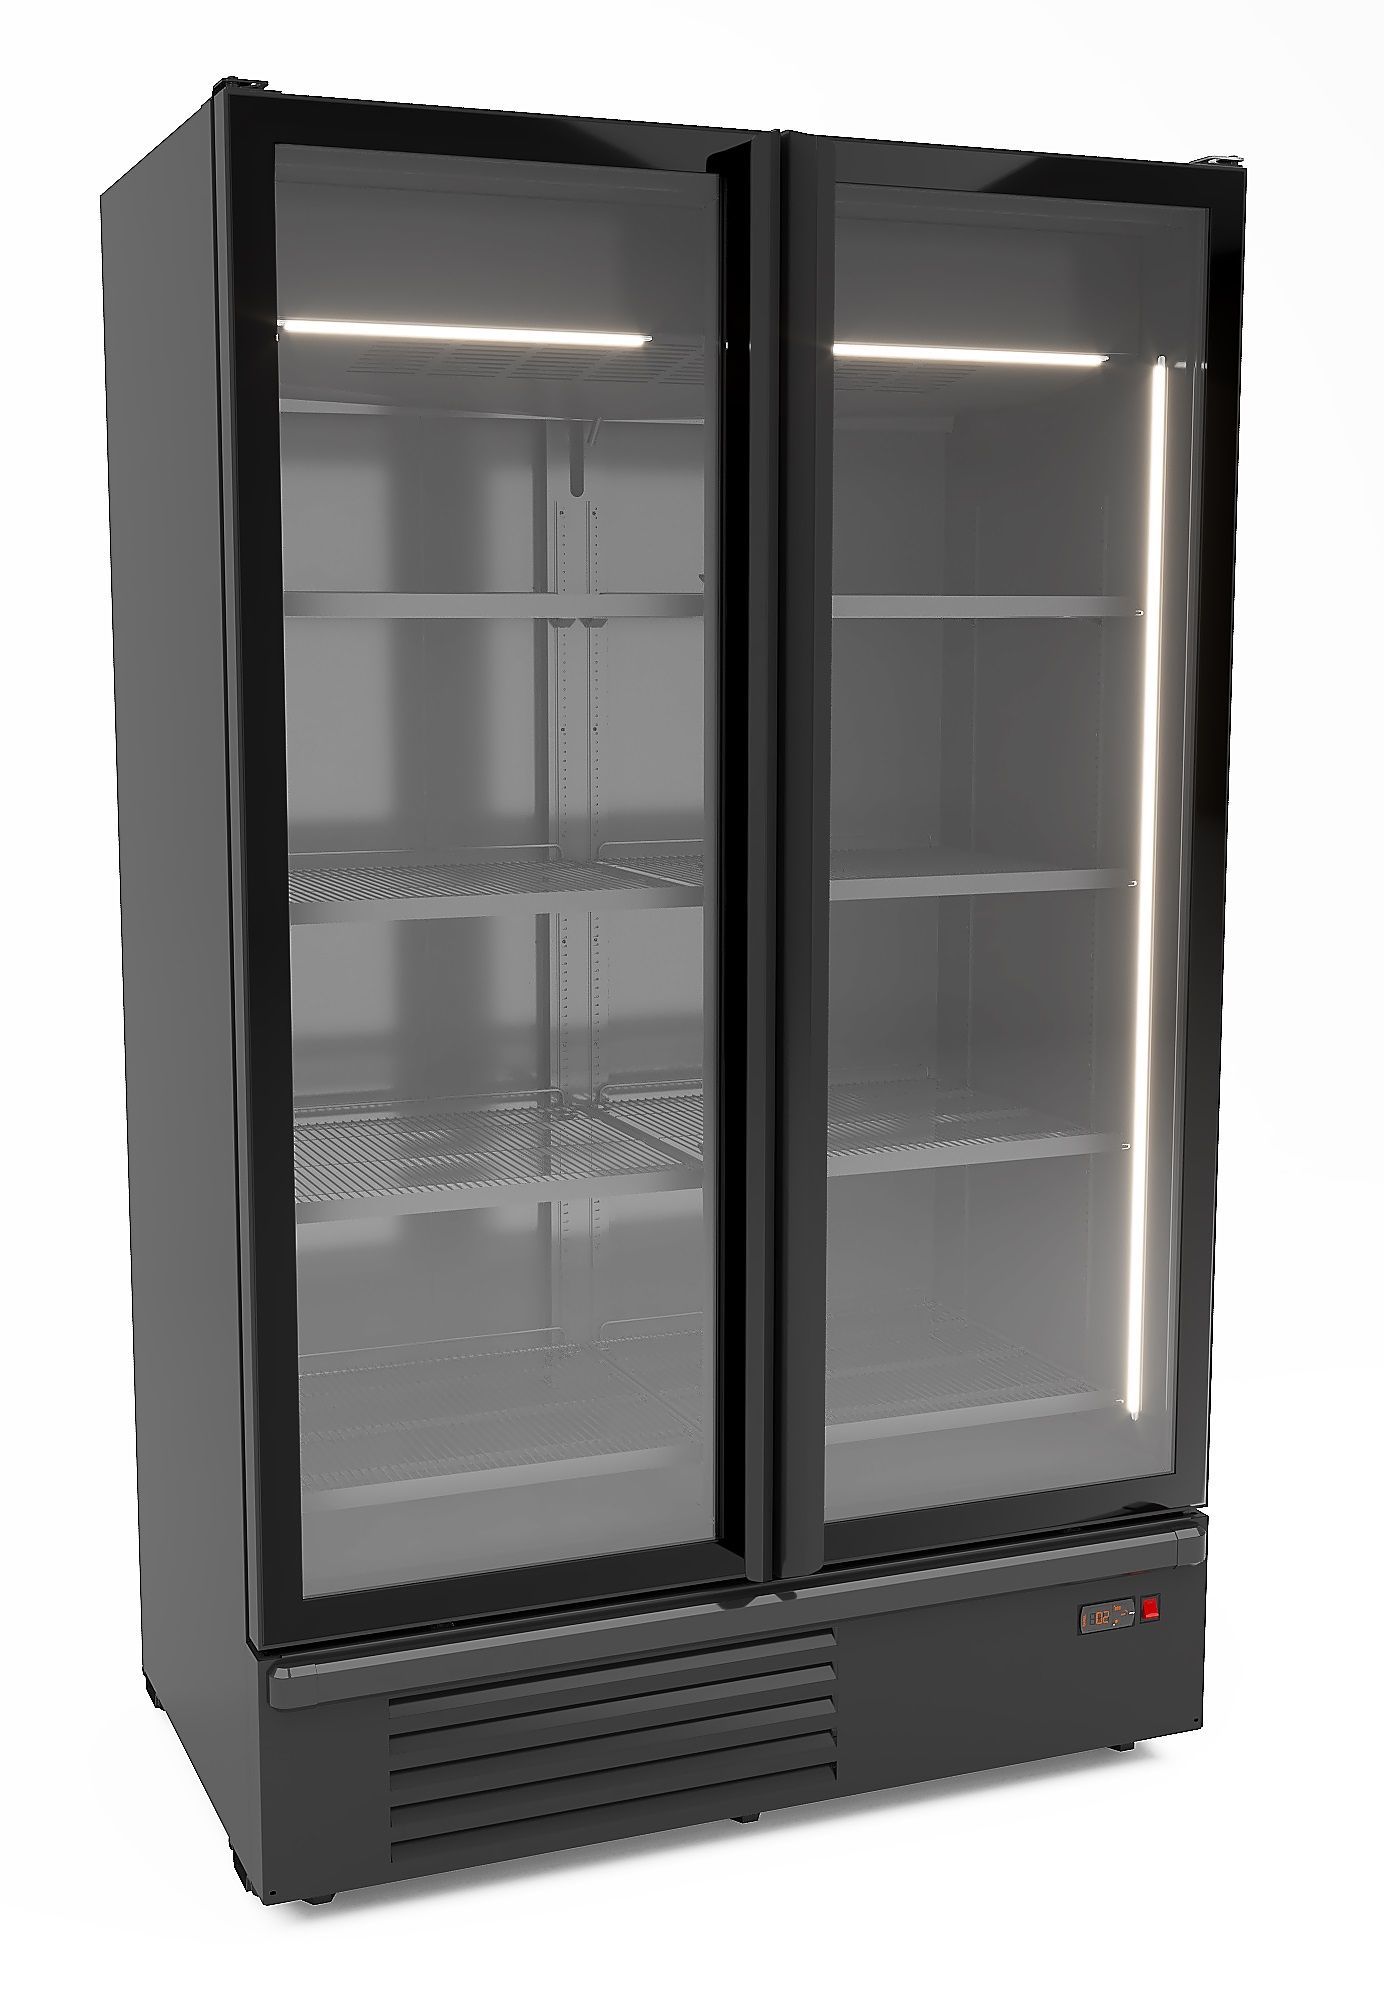 CombiSteel 2 Glass Door Freezer Black 1230L